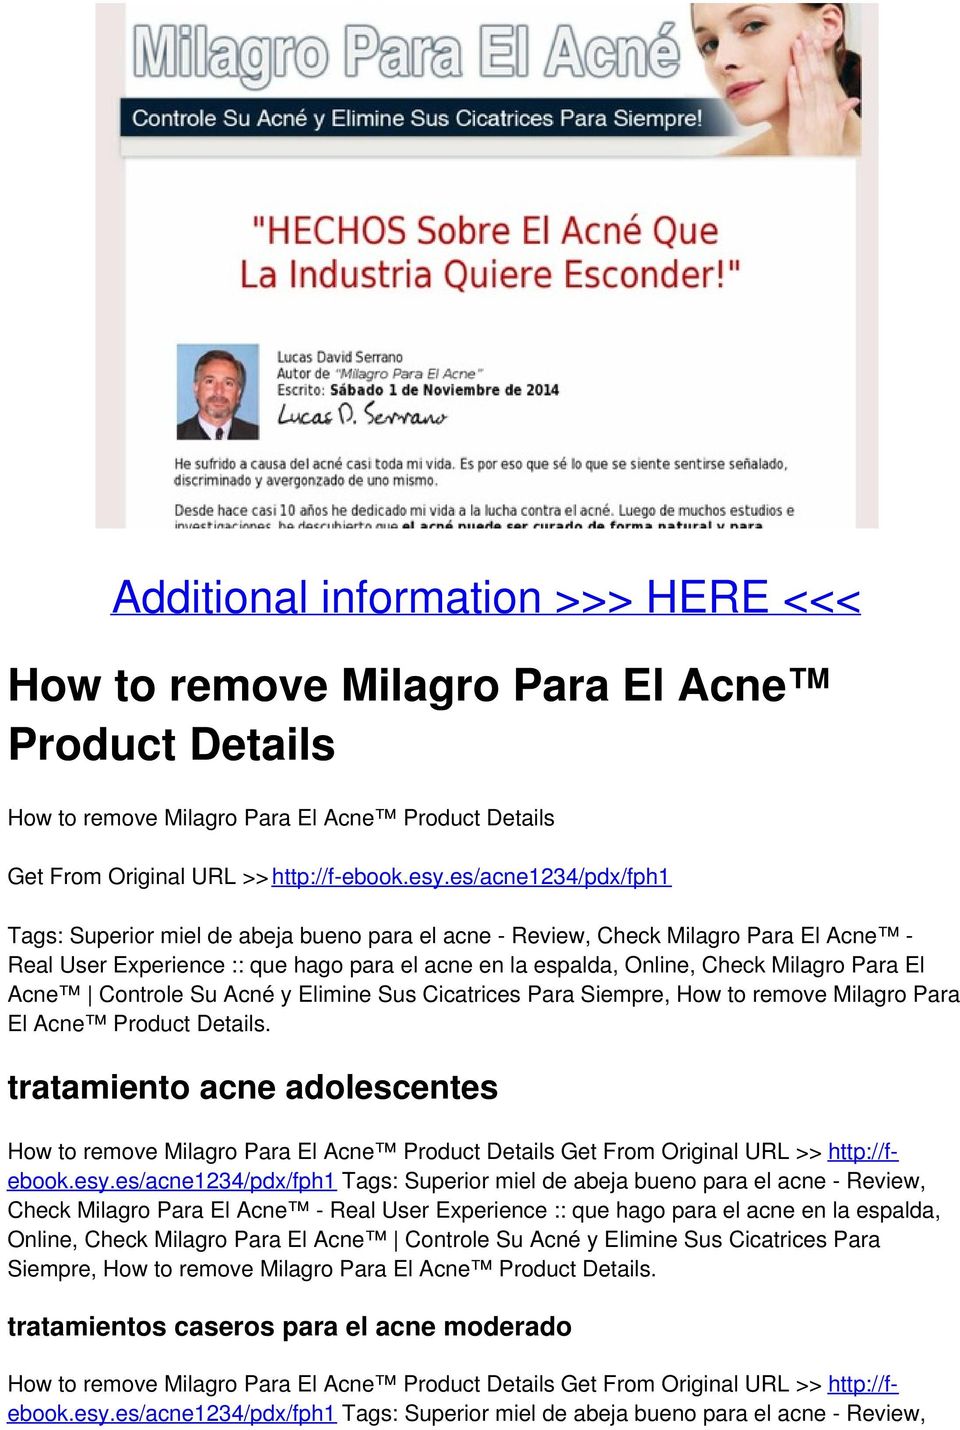 Acne Controle Su Acné y Elimine Sus Cicatrices Para Siempre, How to remove Milagro Para El Acne Product Details.